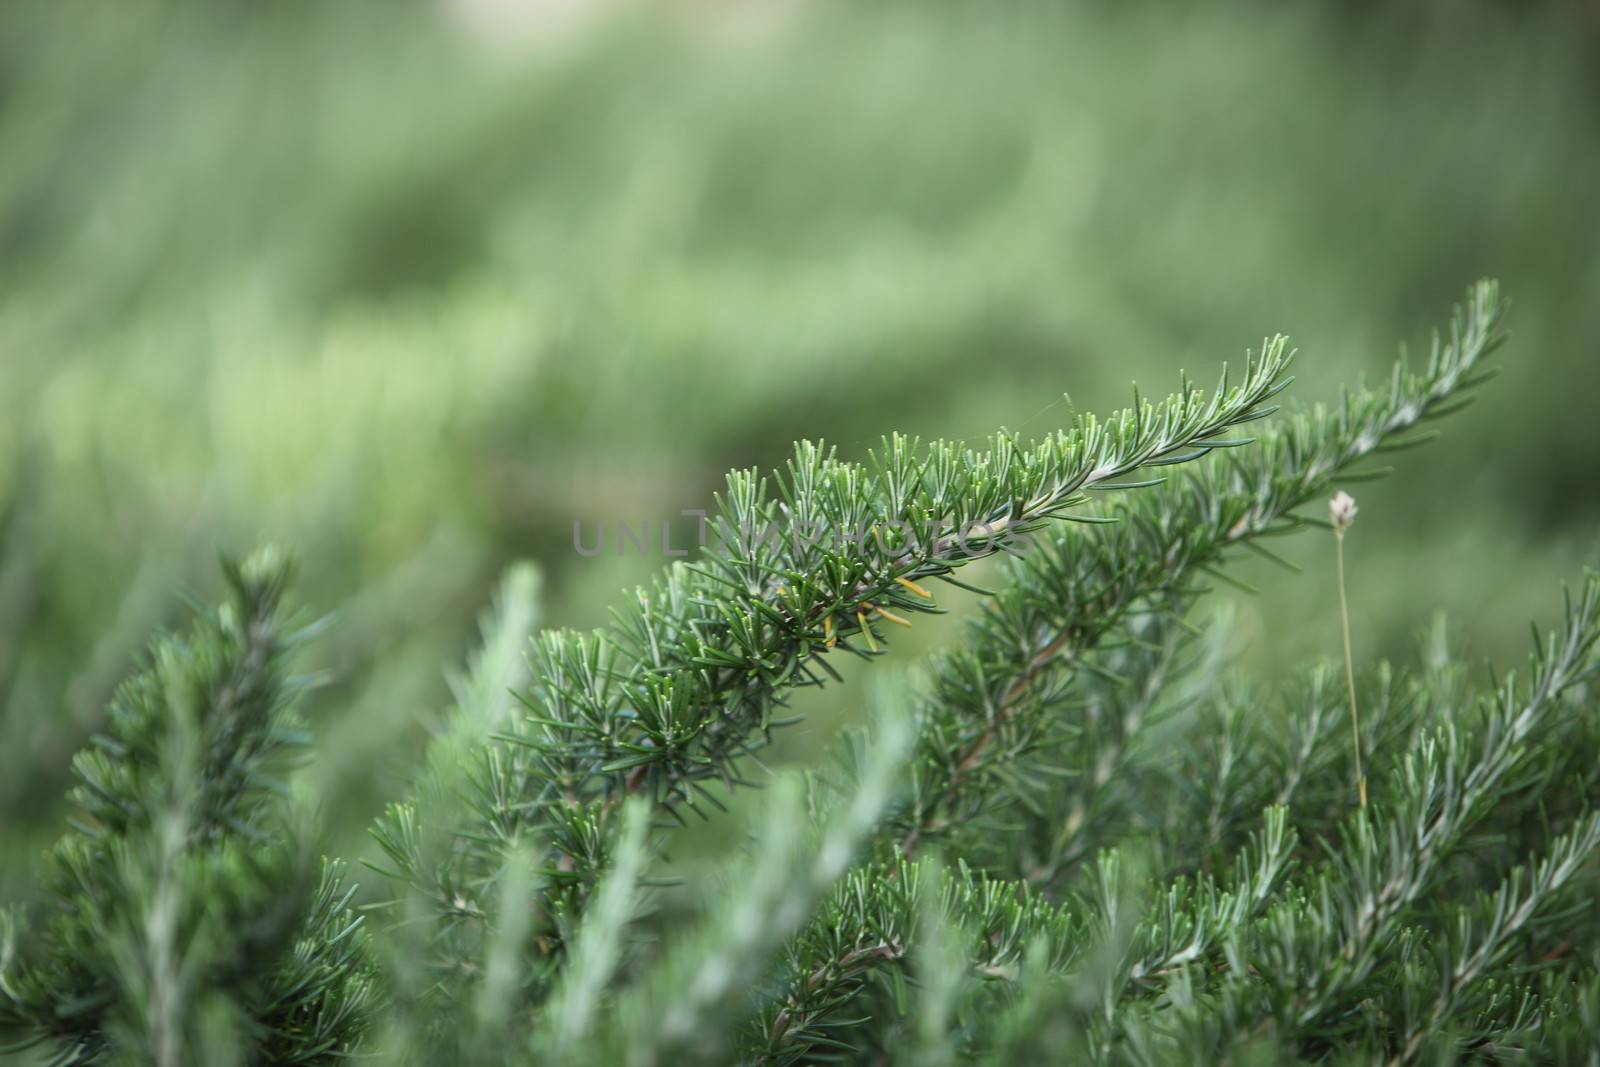 Evergreen pine tree needles by Farina6000